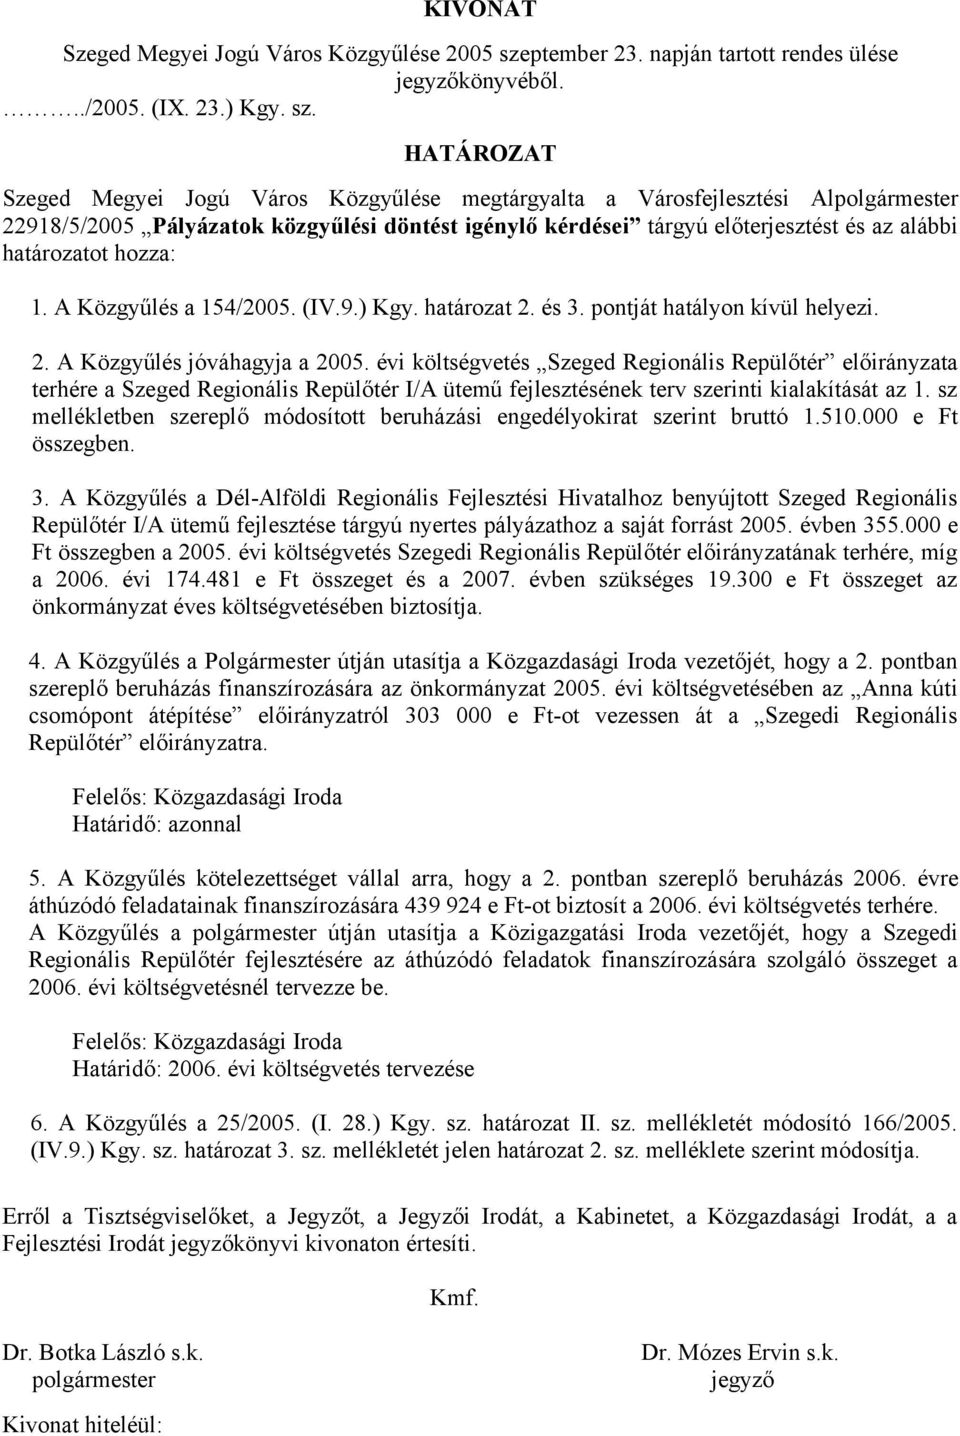 HATÁROZAT Szeged Megyei Jogú Város Közgyűlése megtárgyalta a Városfejlesztési Alpolgármester 22918/5/2005 Pályázatok közgyűlési döntést igénylő kérdései tárgyú előterjesztést és az alábbi határozatot